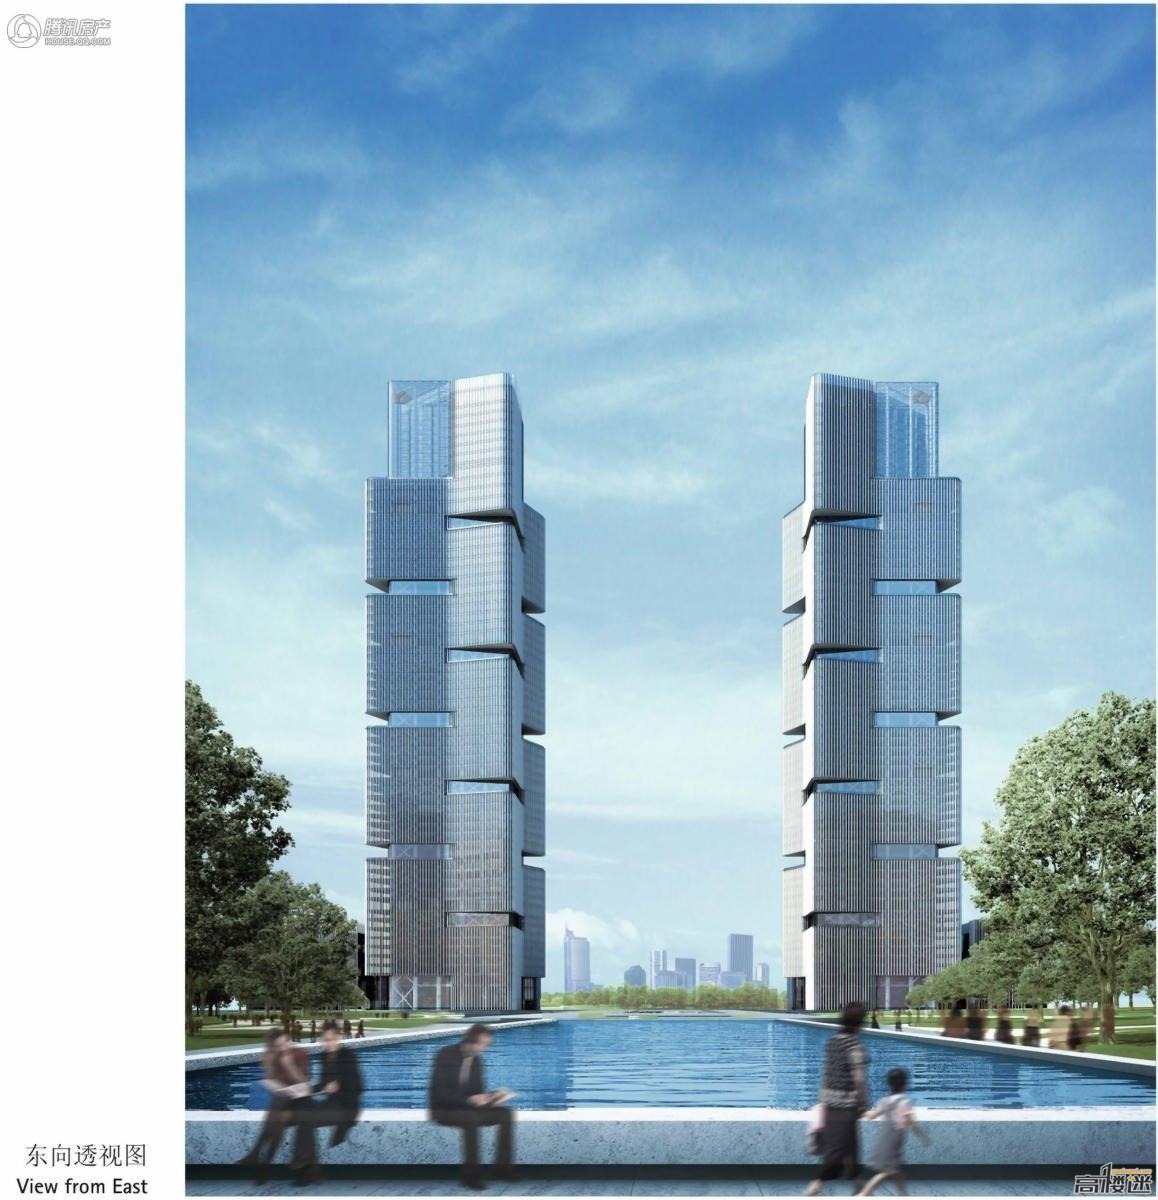 郑东绿地中心【285mx2 63层】已建成 - 郑州 - 高楼迷